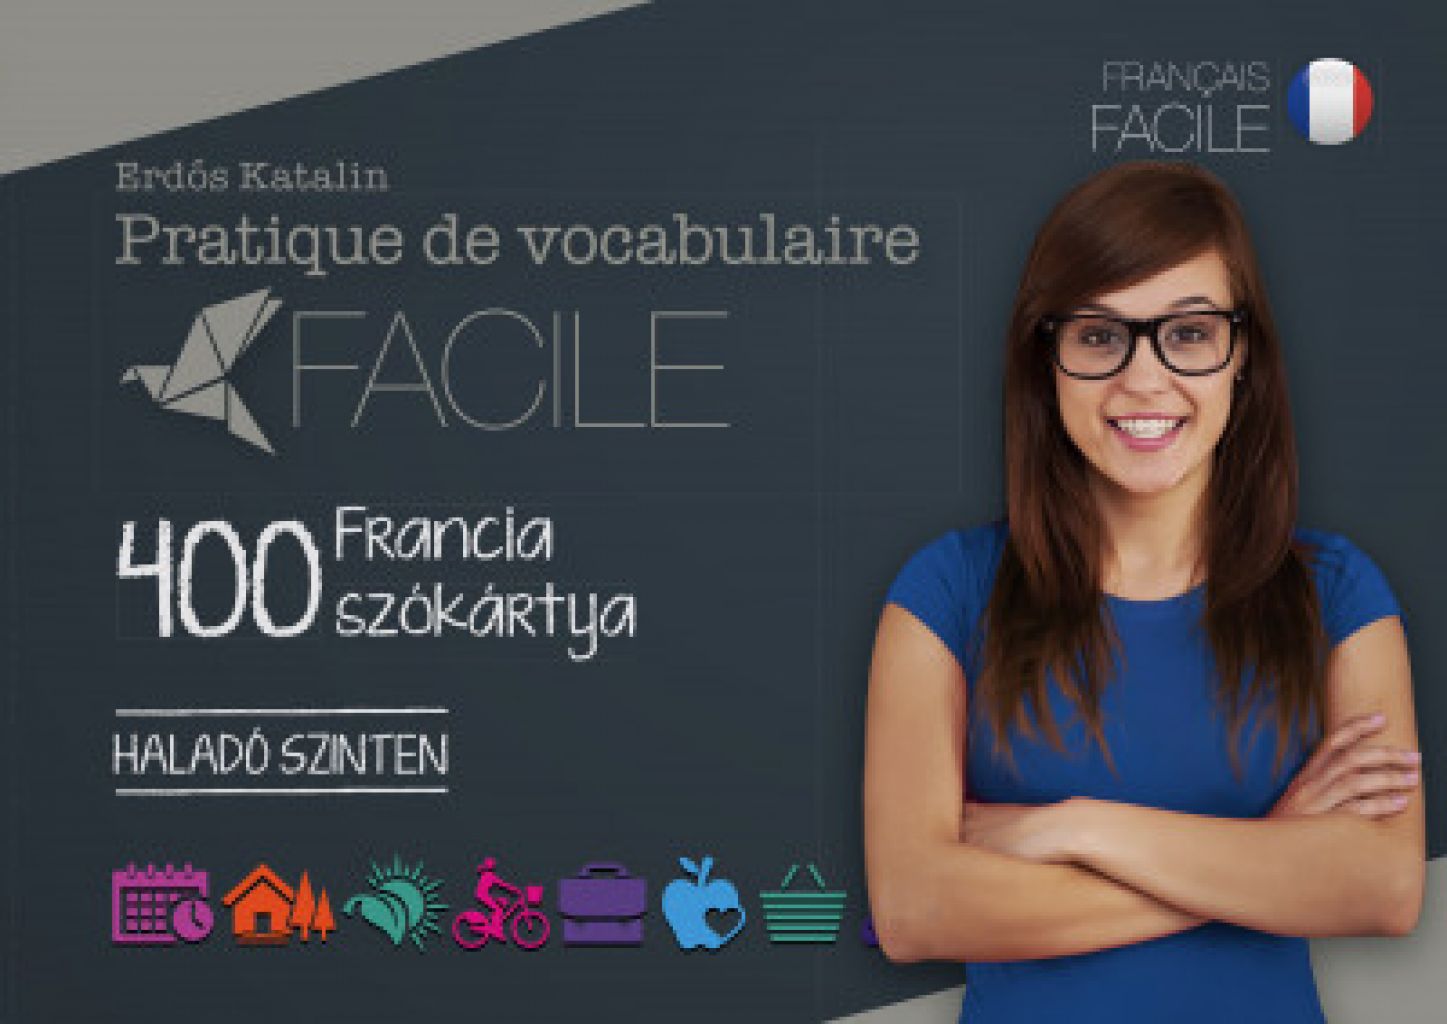 Erdős Katalin - Pratique de vocabulaire Facile - 400 francia szókártya - Haladó szinten